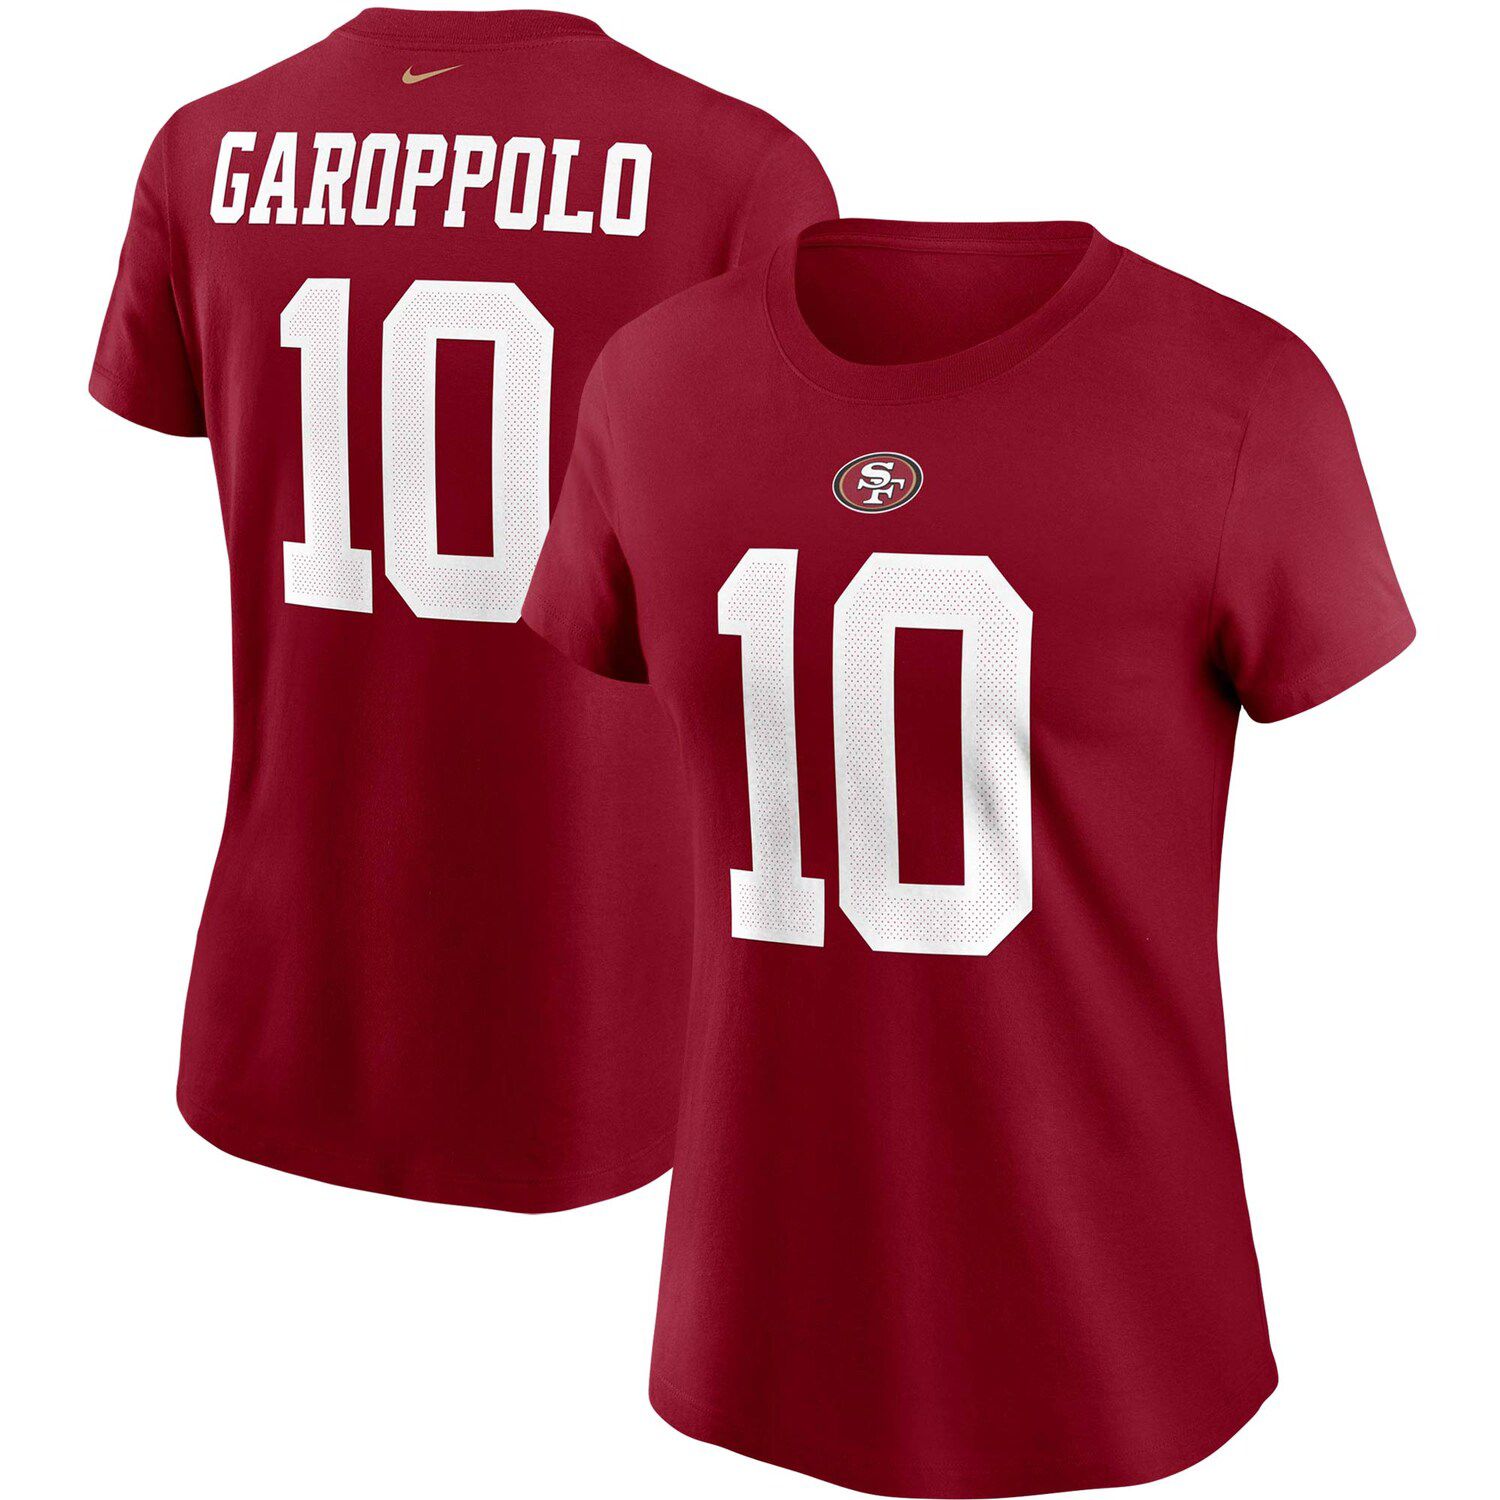 women's garoppolo shirt